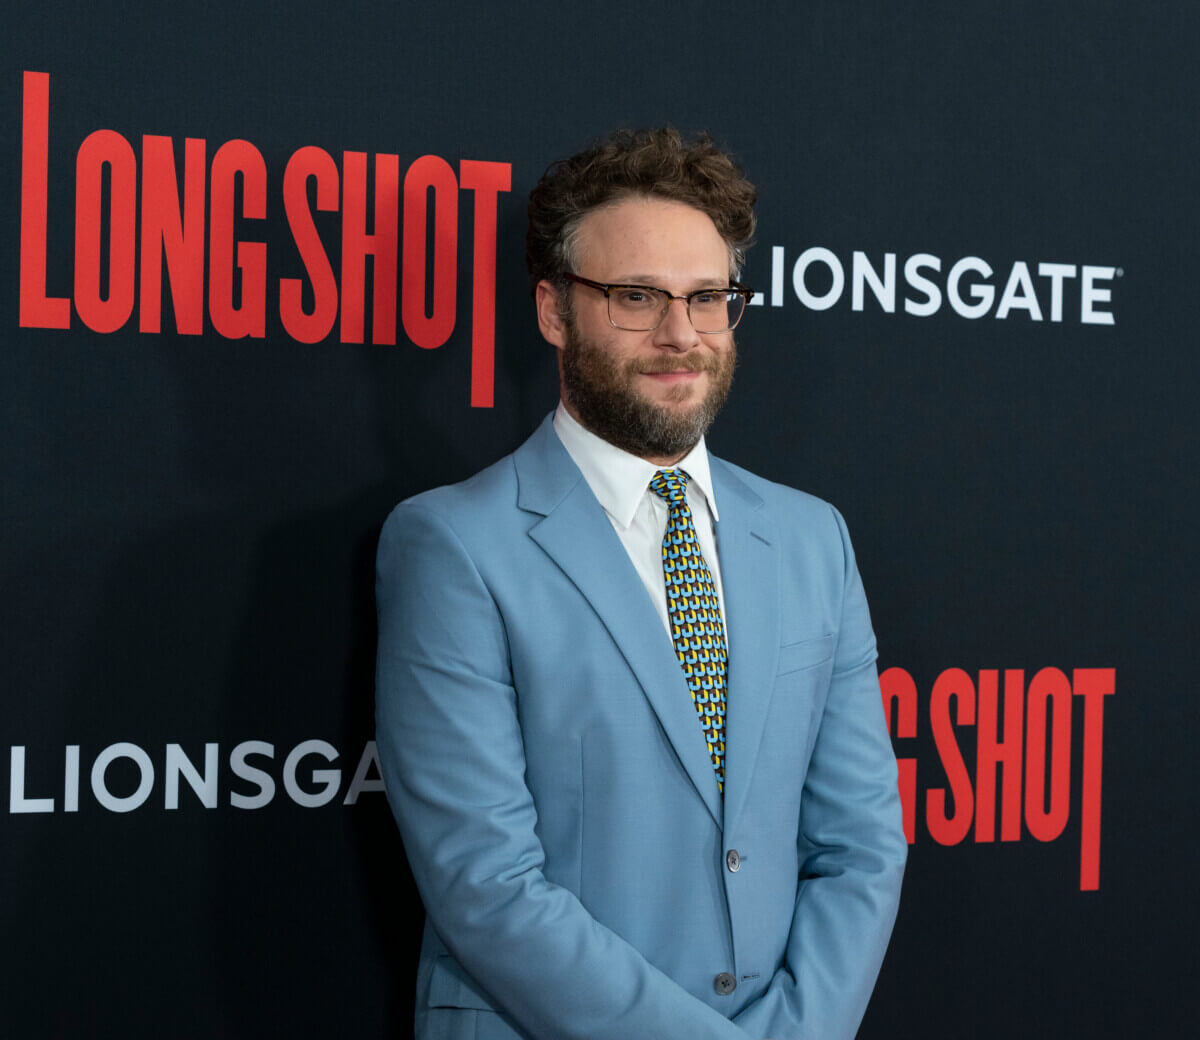 Seth Rogen attends premiere of Long Shot in 2019